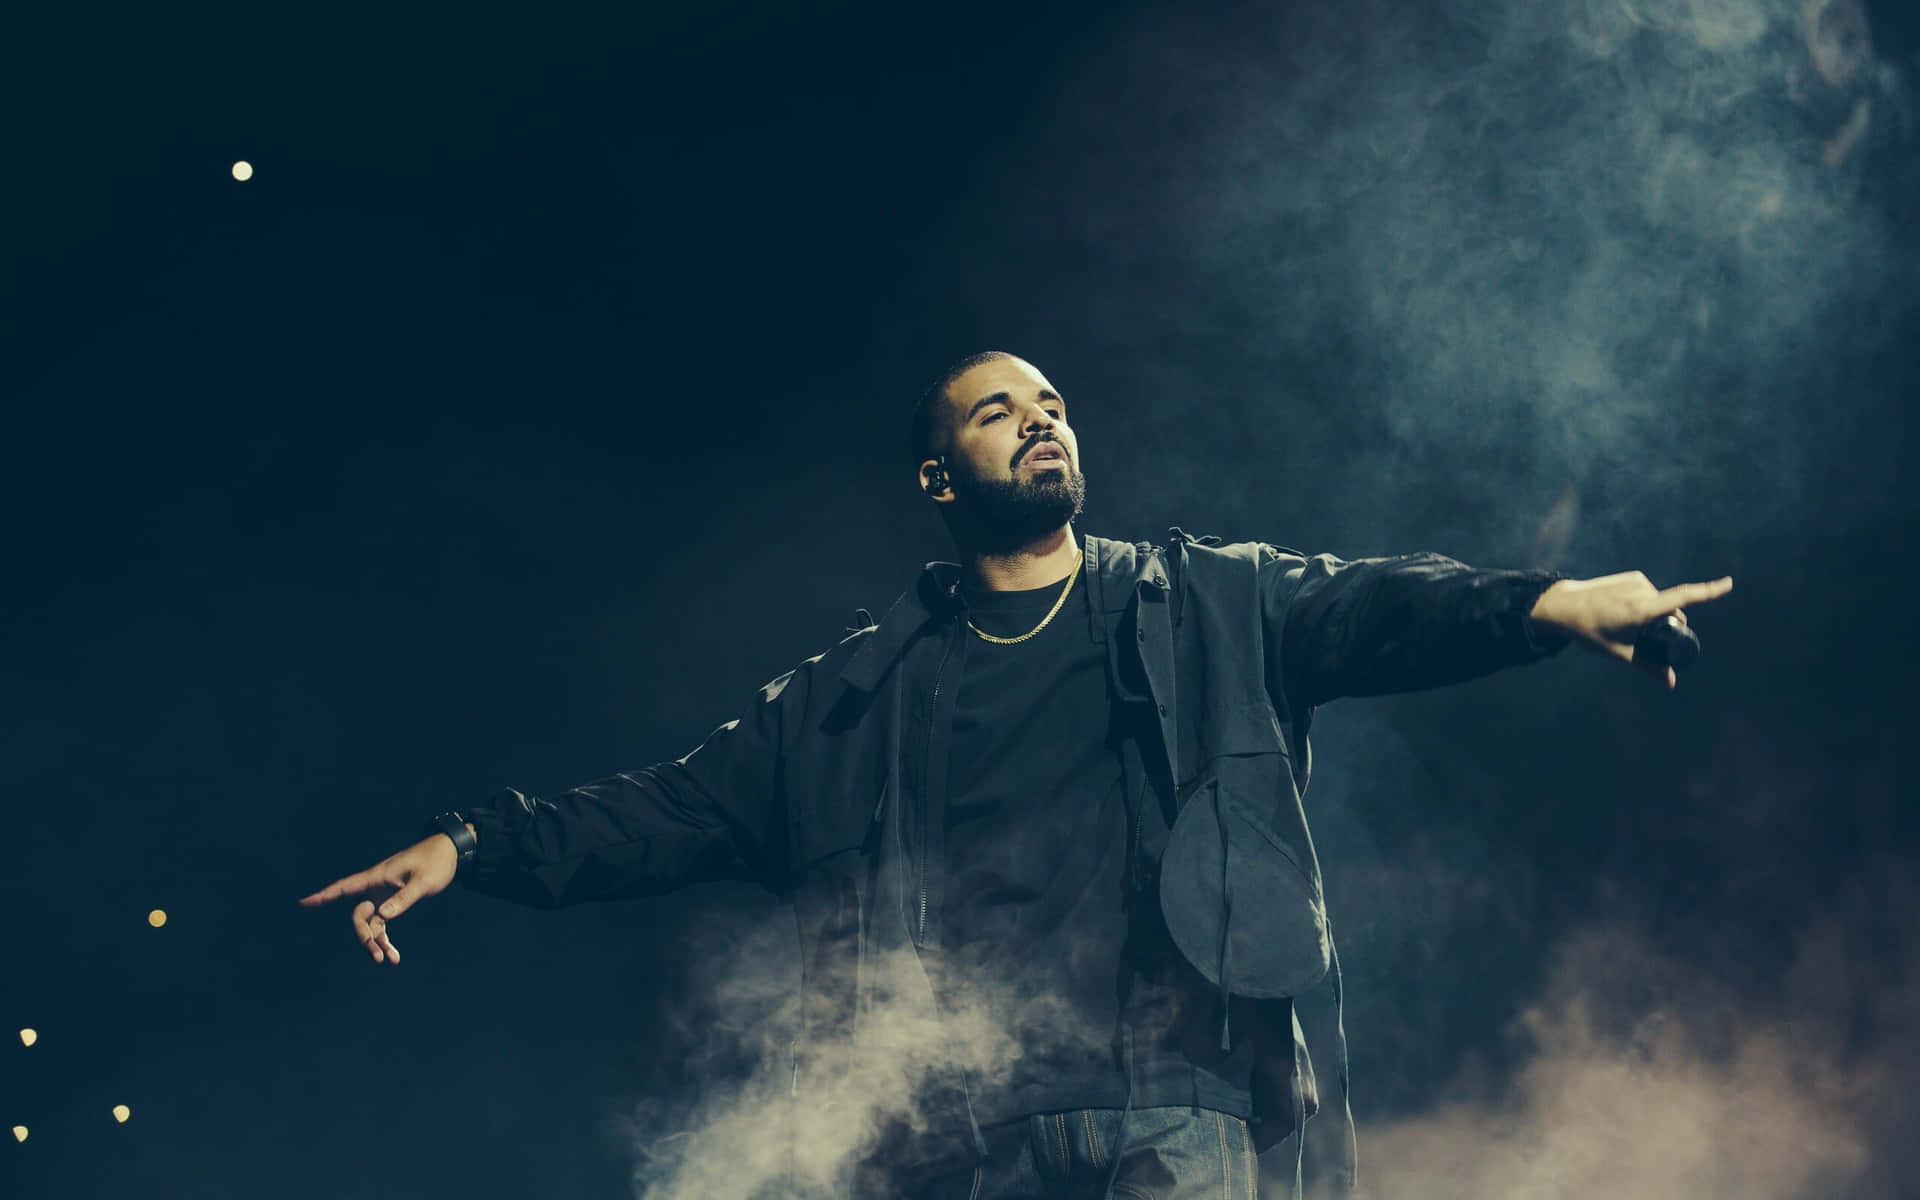 Artistavencedor Do Grammy, Drake, No Auge De Sua Carreira